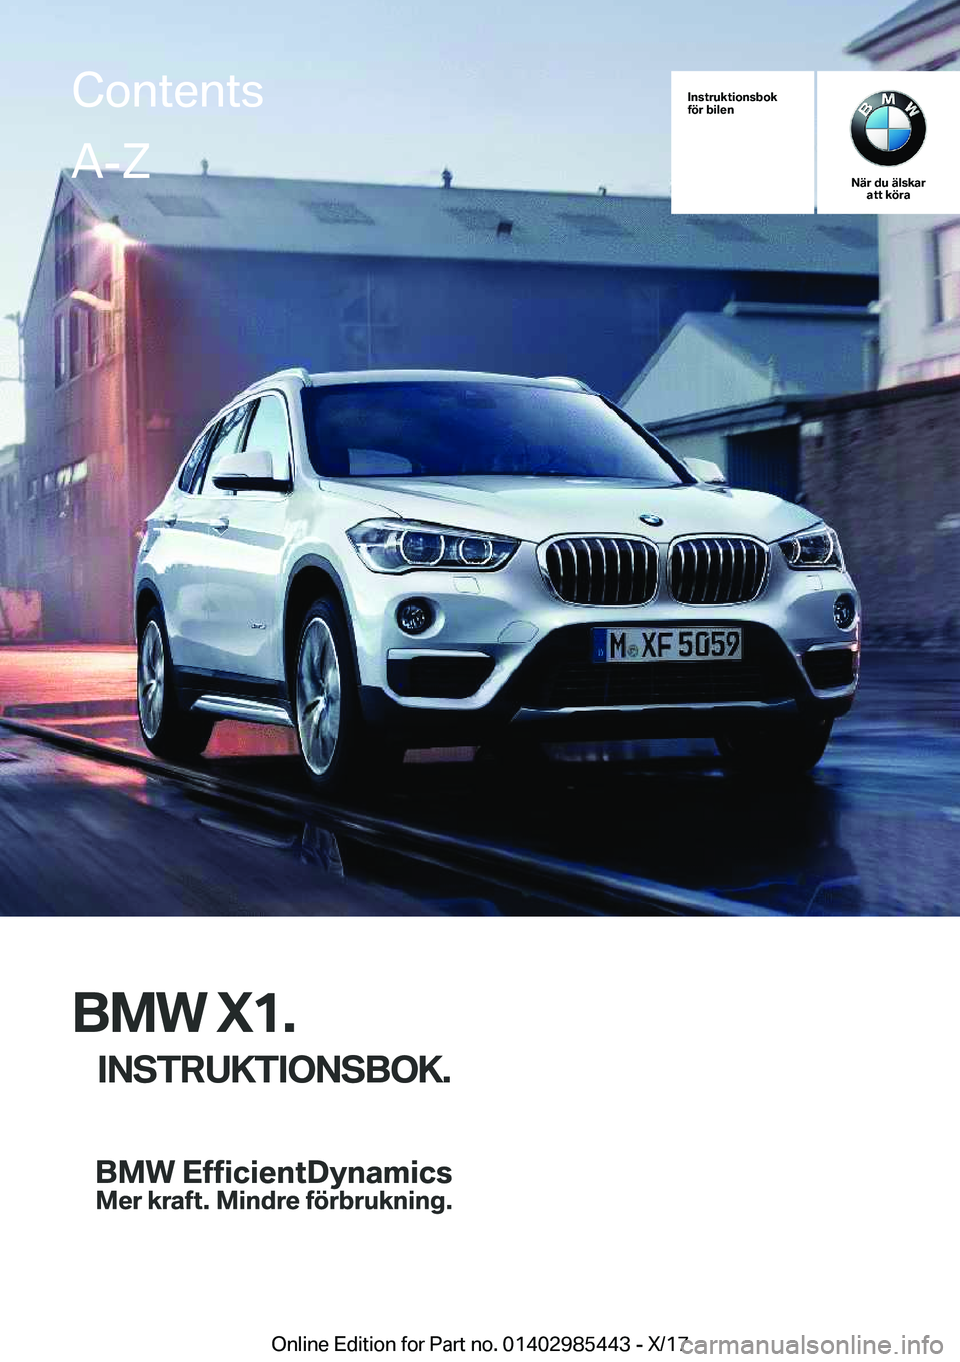 BMW X1 2018  InstruktionsbÖcker (in Swedish) �I�n�s�t�r�u�k�t�i�o�n�s�b�o�k
�f�